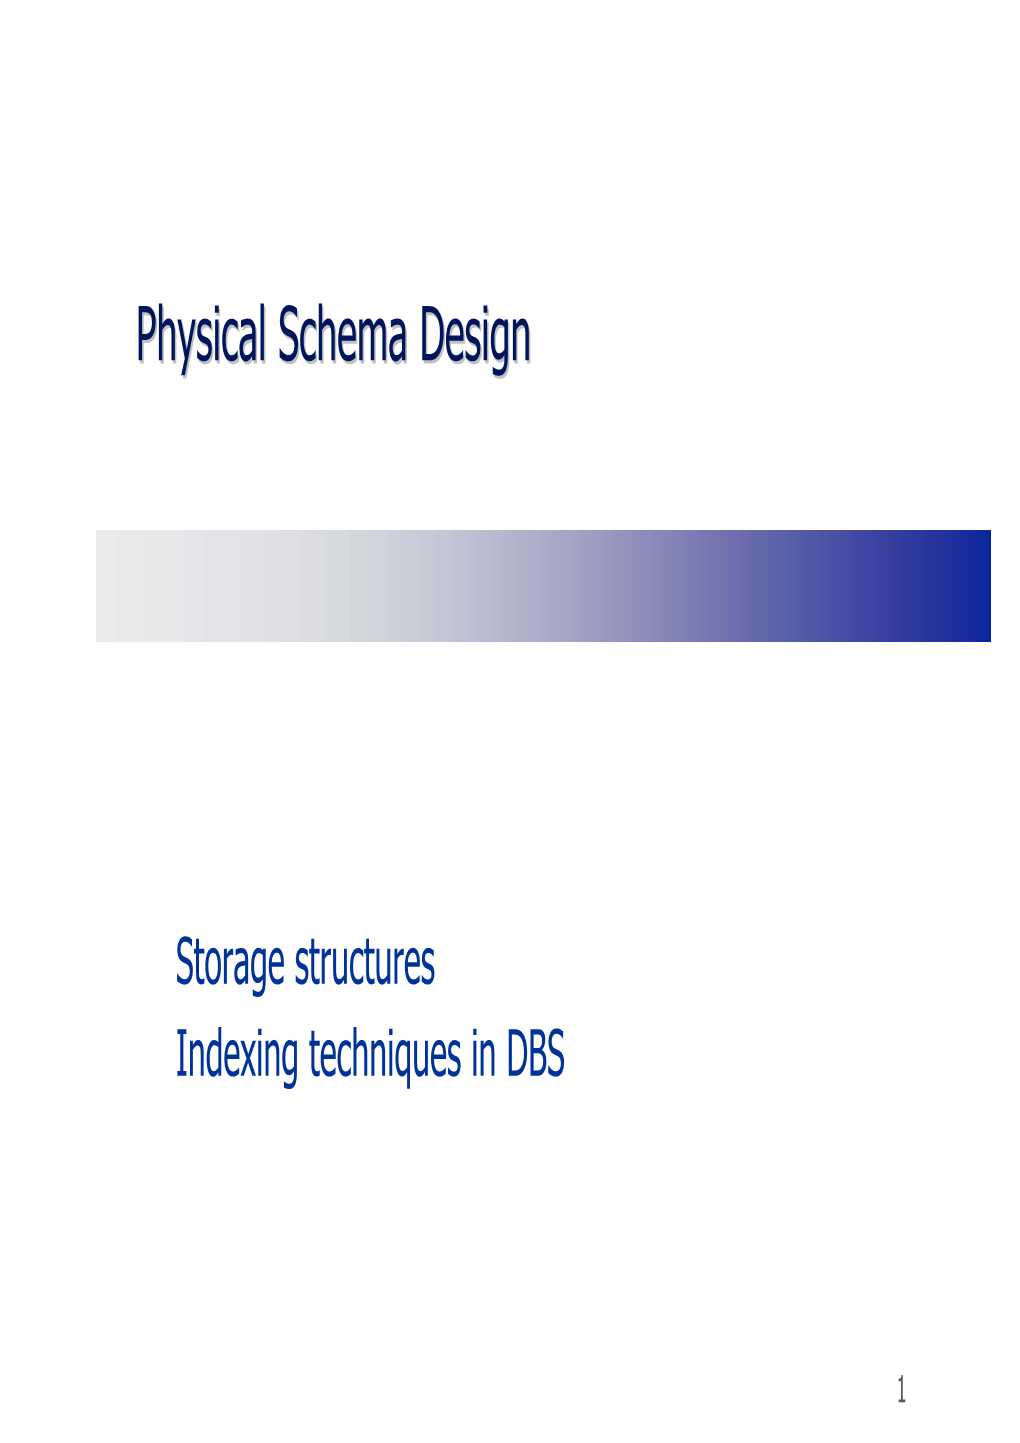 Physical Schema Design Goals — Effective Data Organization